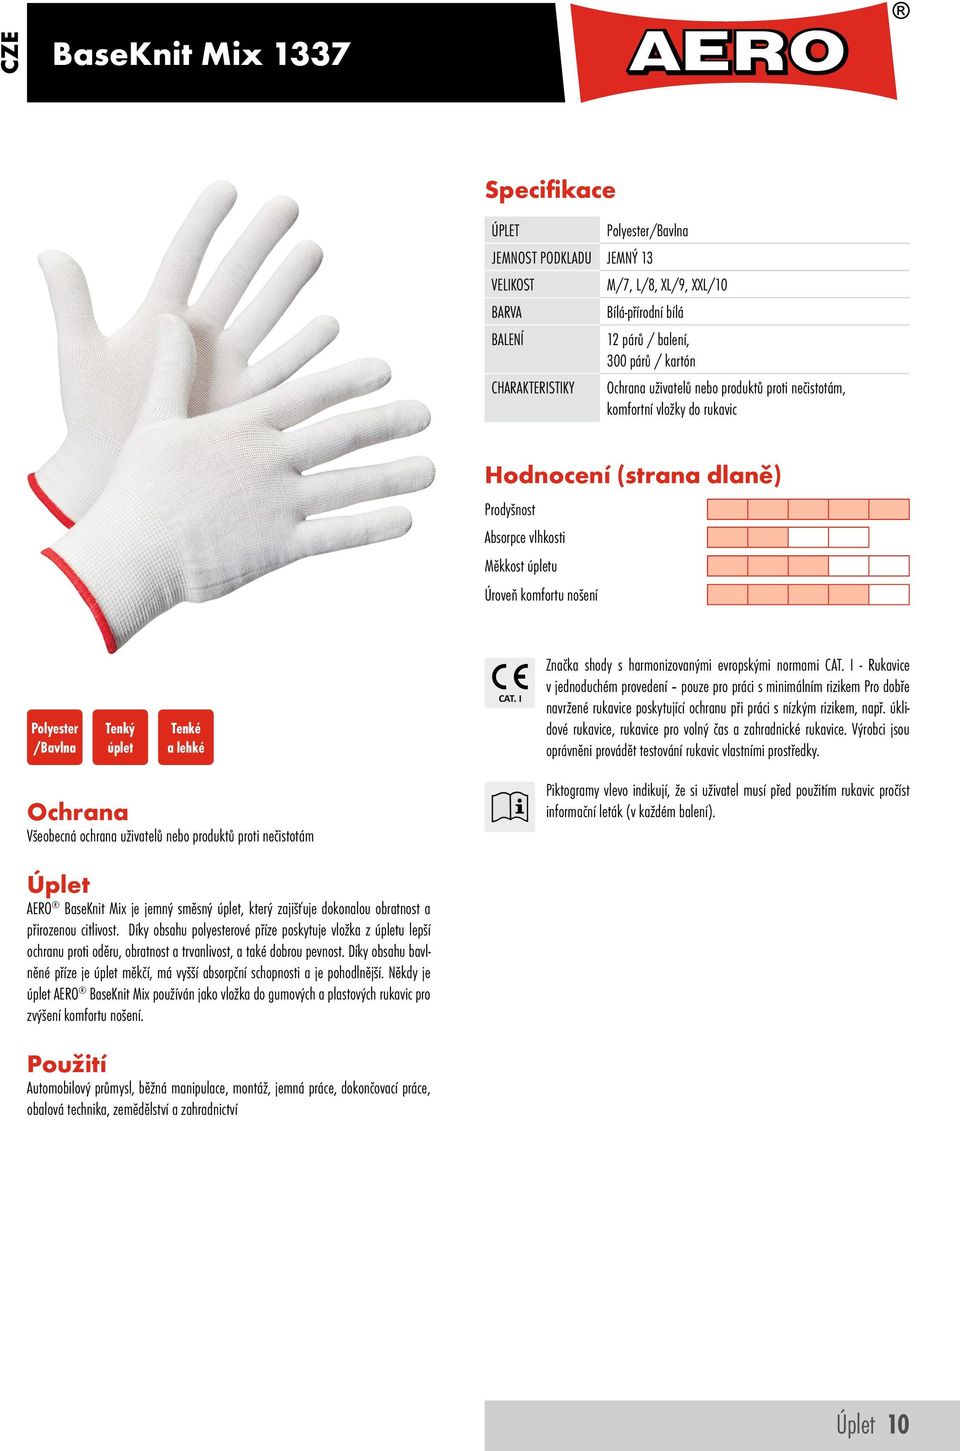 I - Rukavice v jednoduchém provedení pouze pro práci s minimálním rizikem Pro dobře navržené rukavice poskytující ochranu při práci s nízkým rizikem, např.